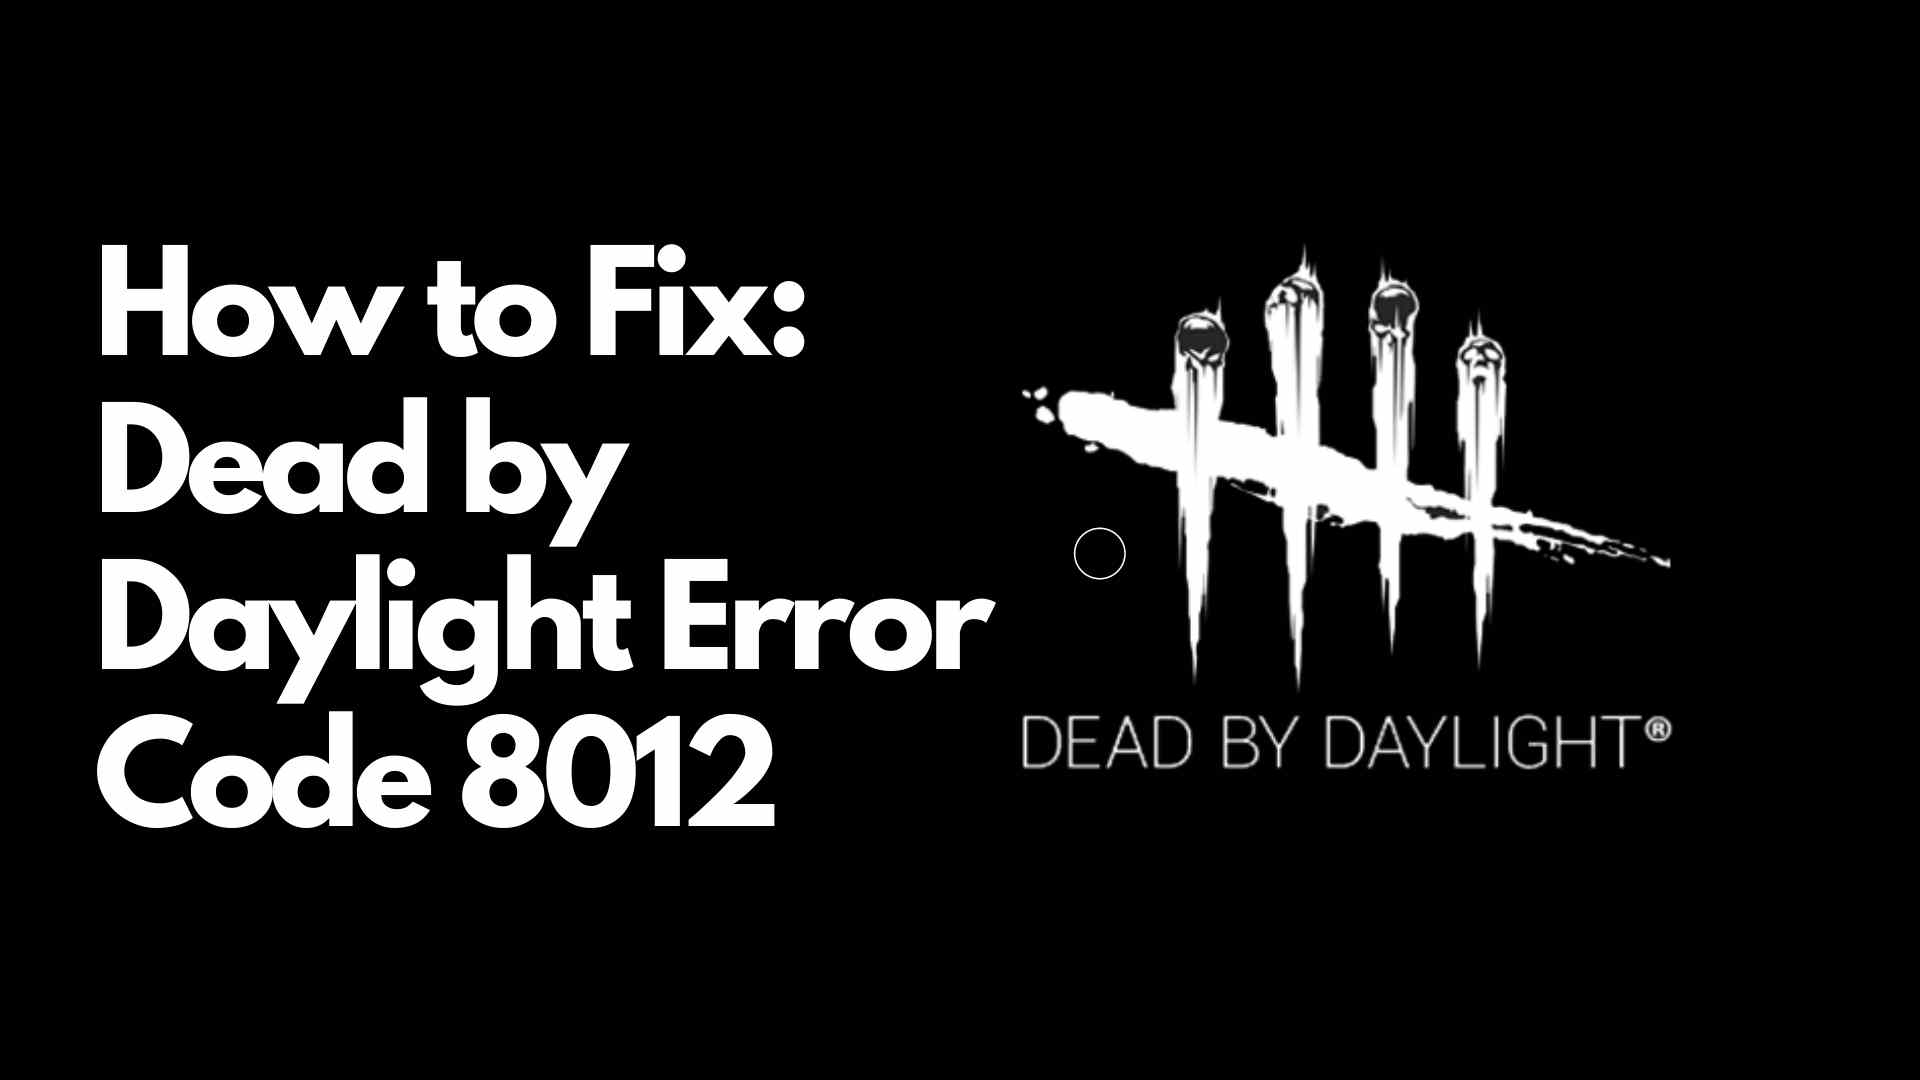 Dead by Daylight Error Code 8012 fix